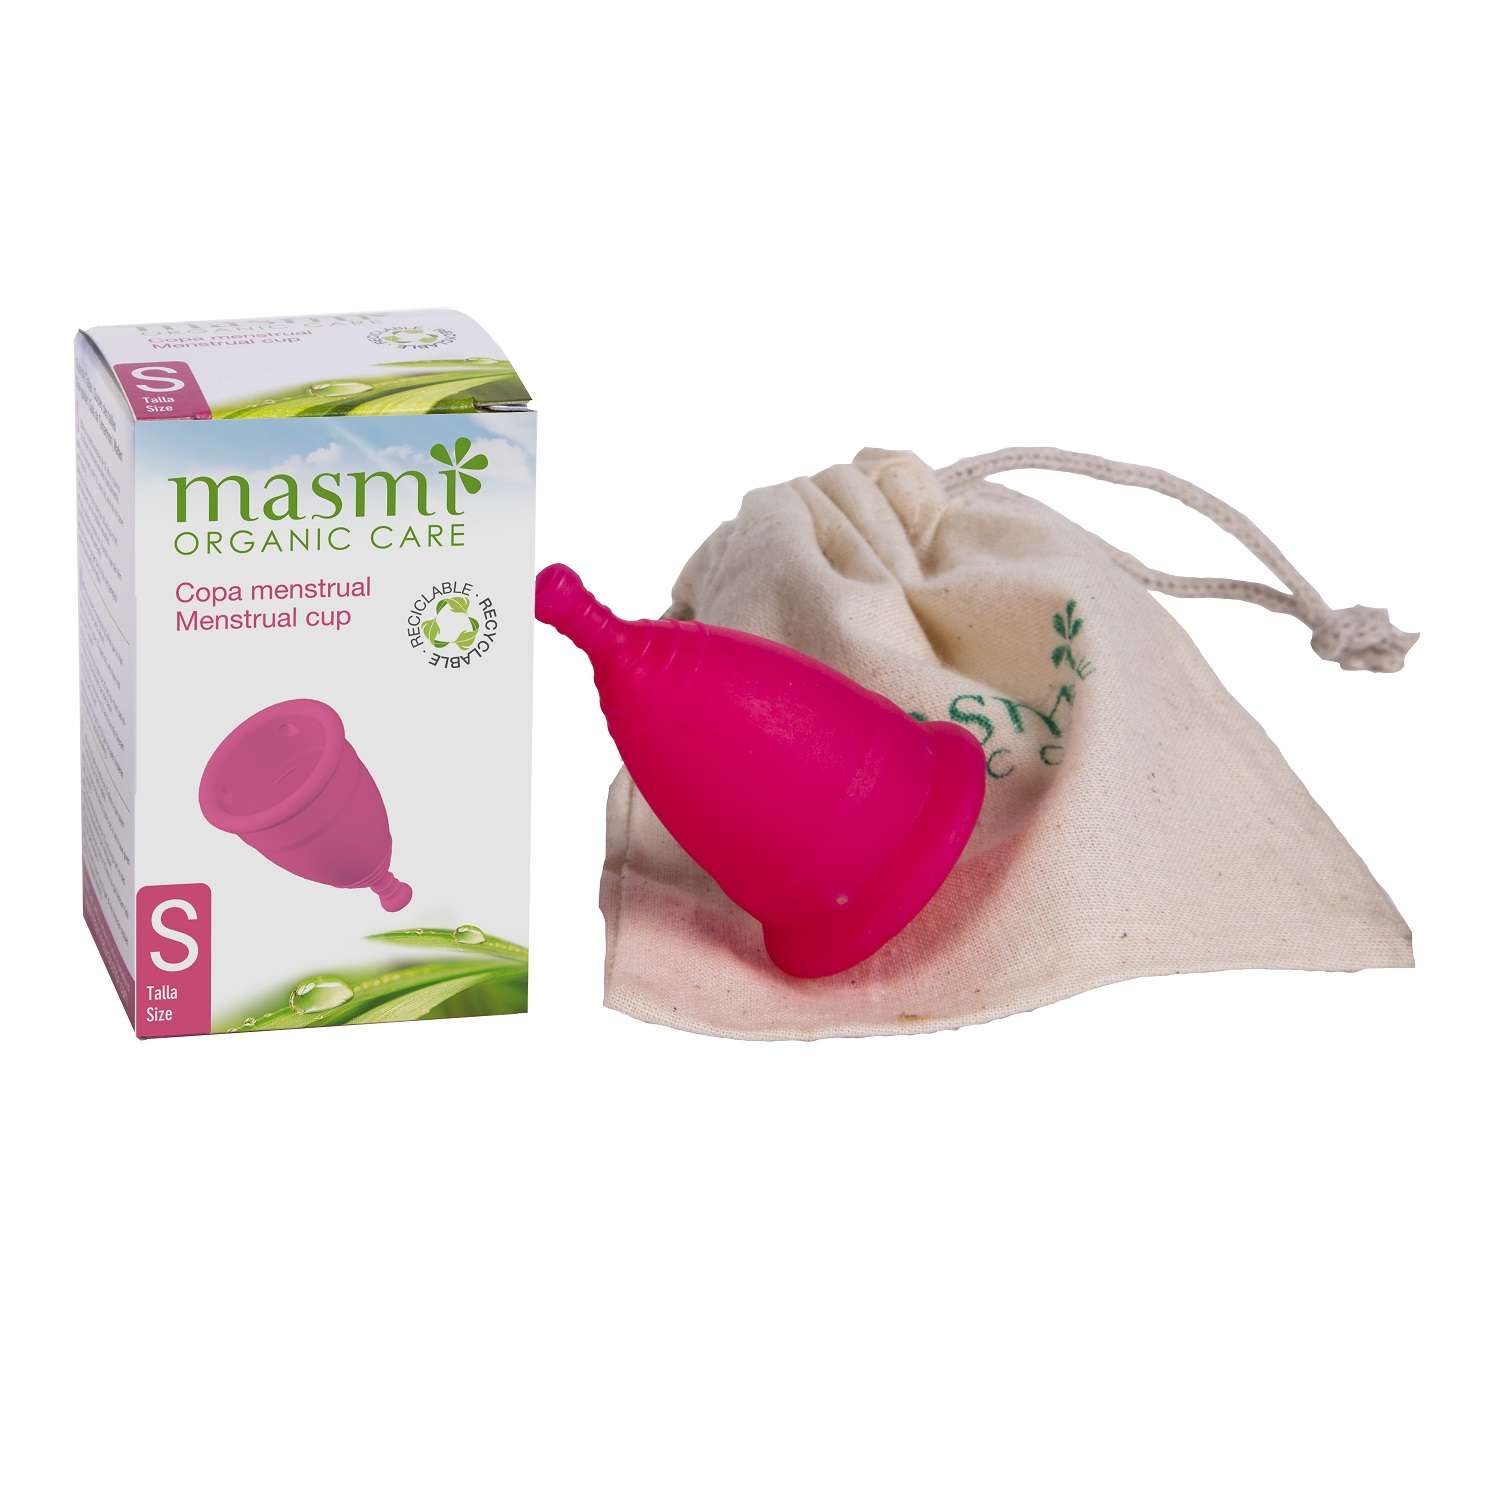 Менструальная чаша Masmi Organic Care гигиеническая размер S - фото 1